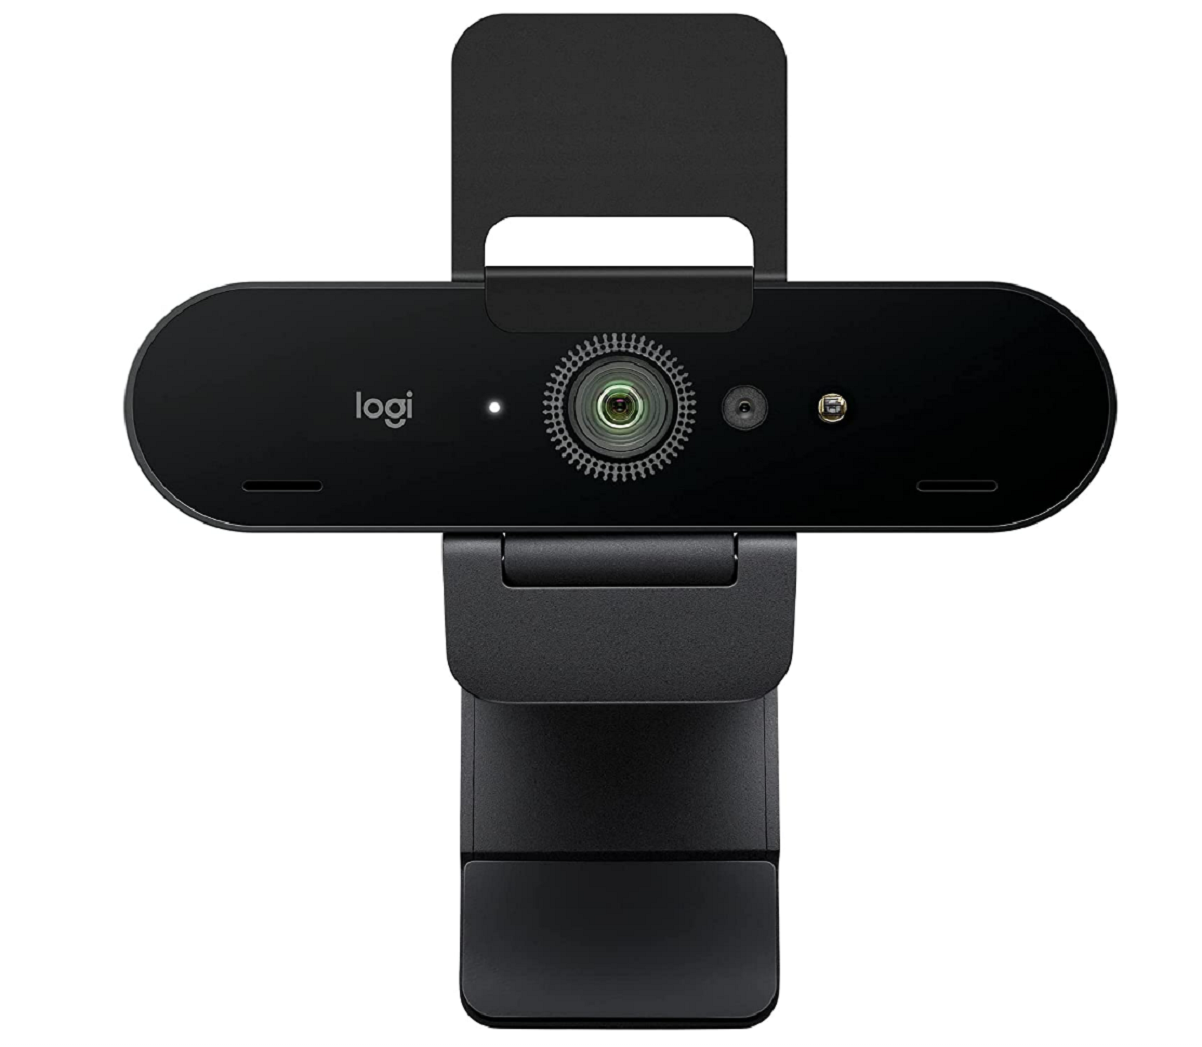 Logitech Brio 4K Ultra HD Webcam - Best Windows Hello webcam overall